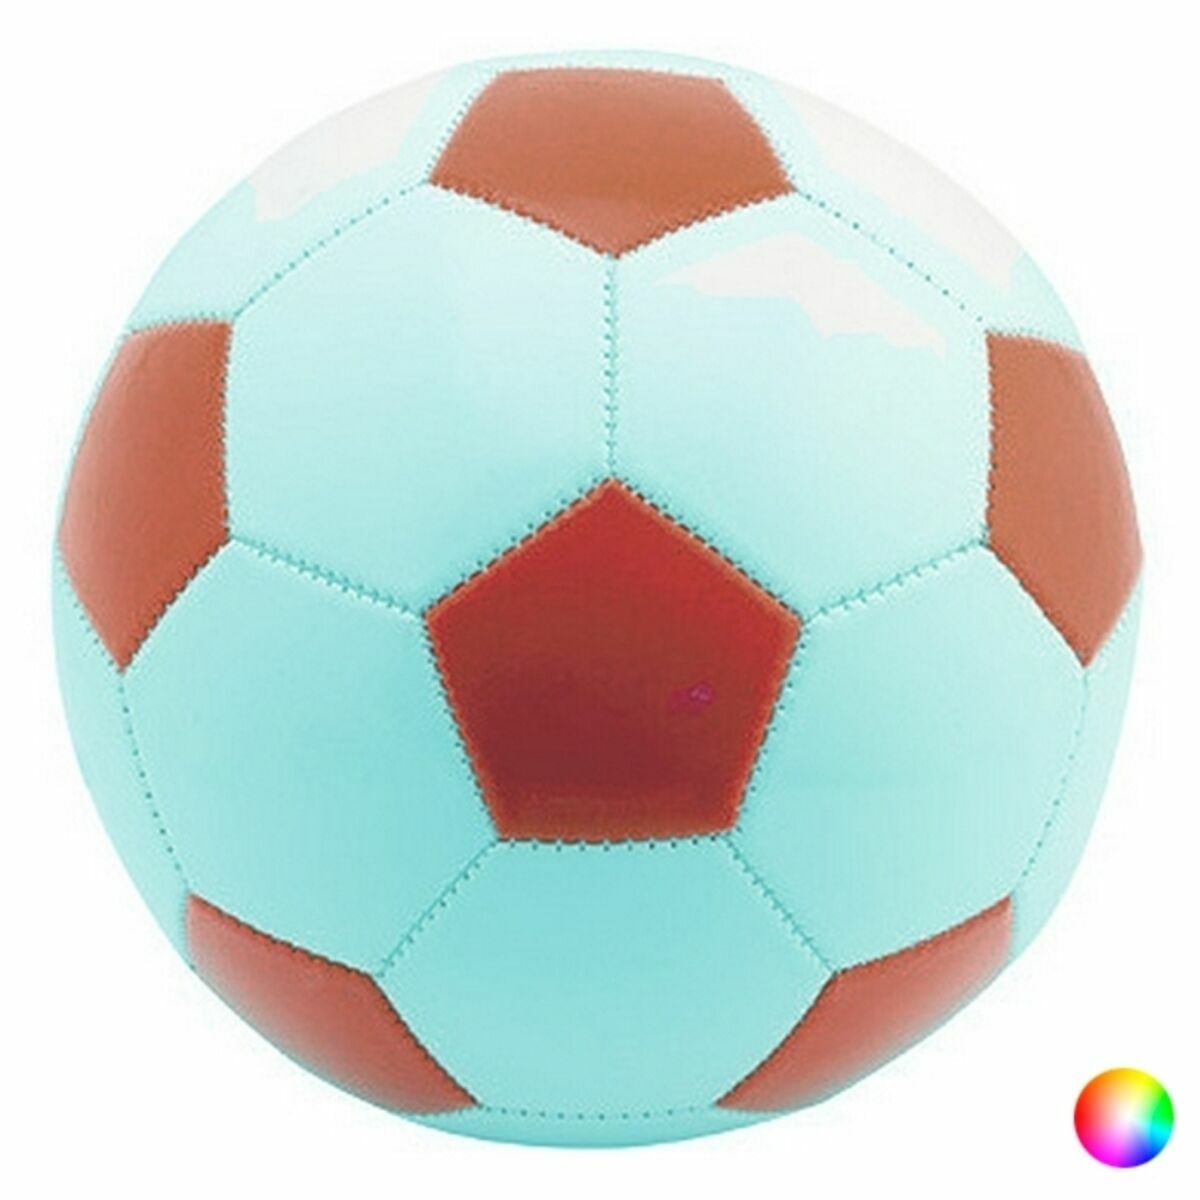 Pallone Da Calcio 144086 (40 Unità) Colore:rosso